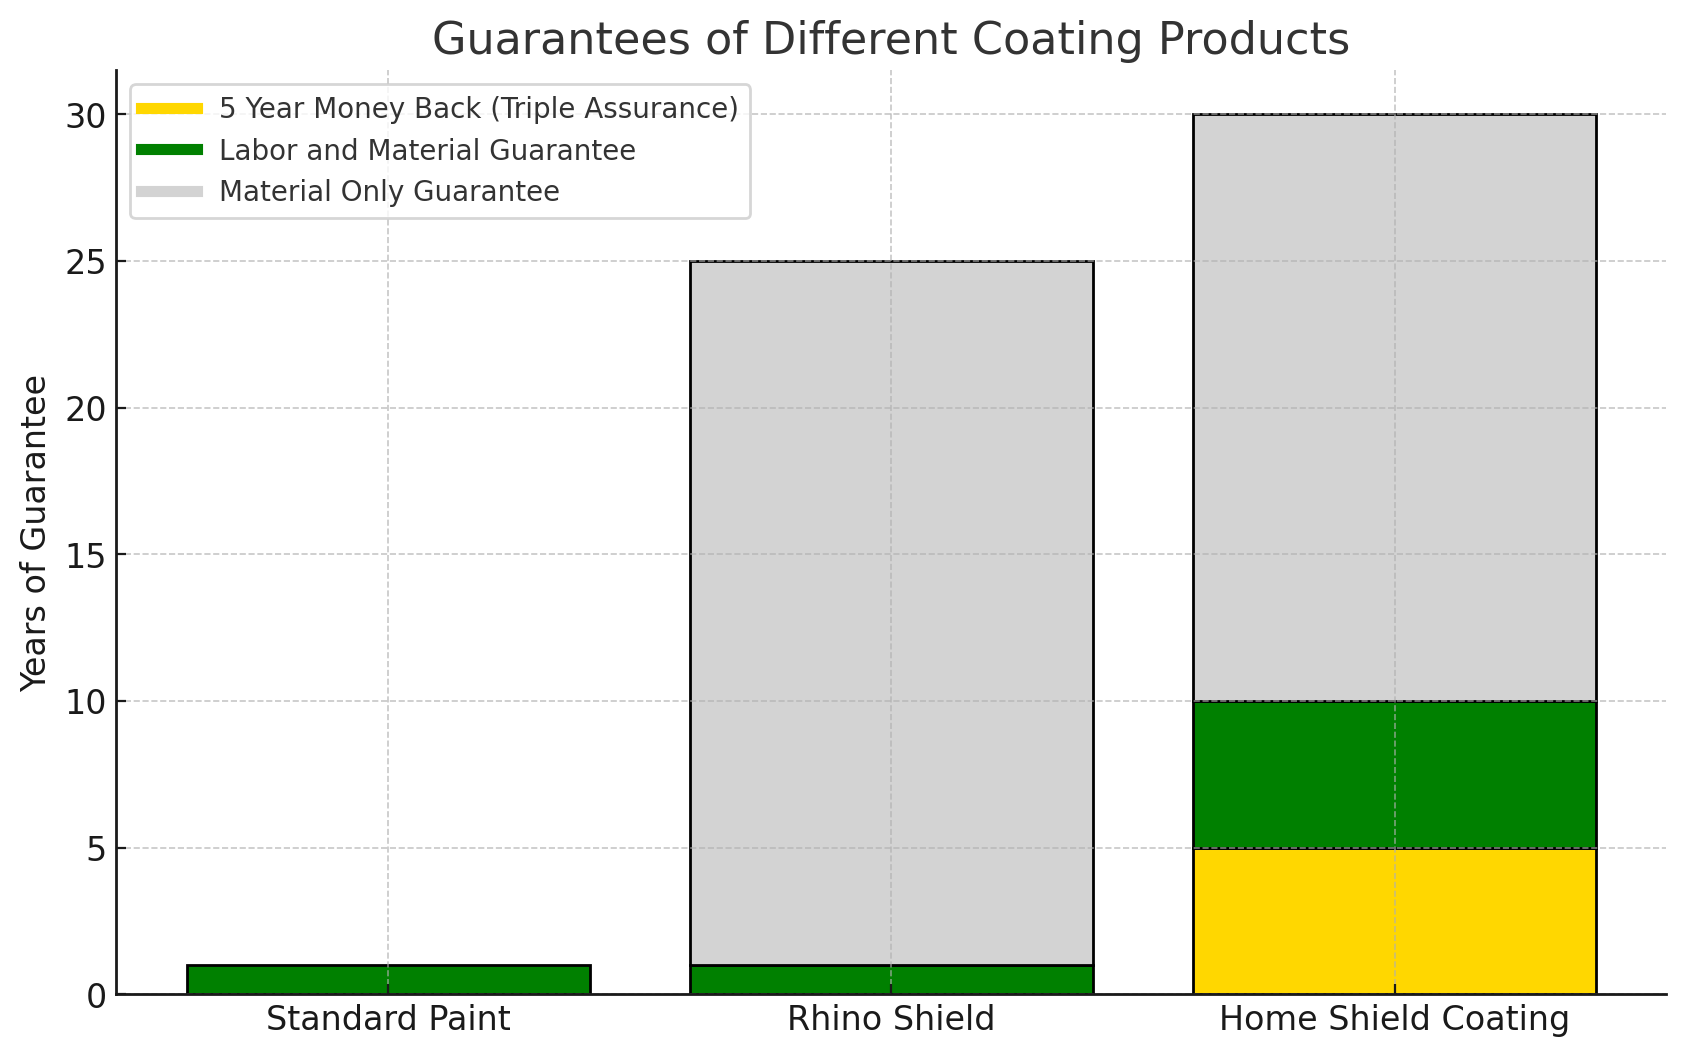 Warranty Comparison Paint vs Rhino Shield